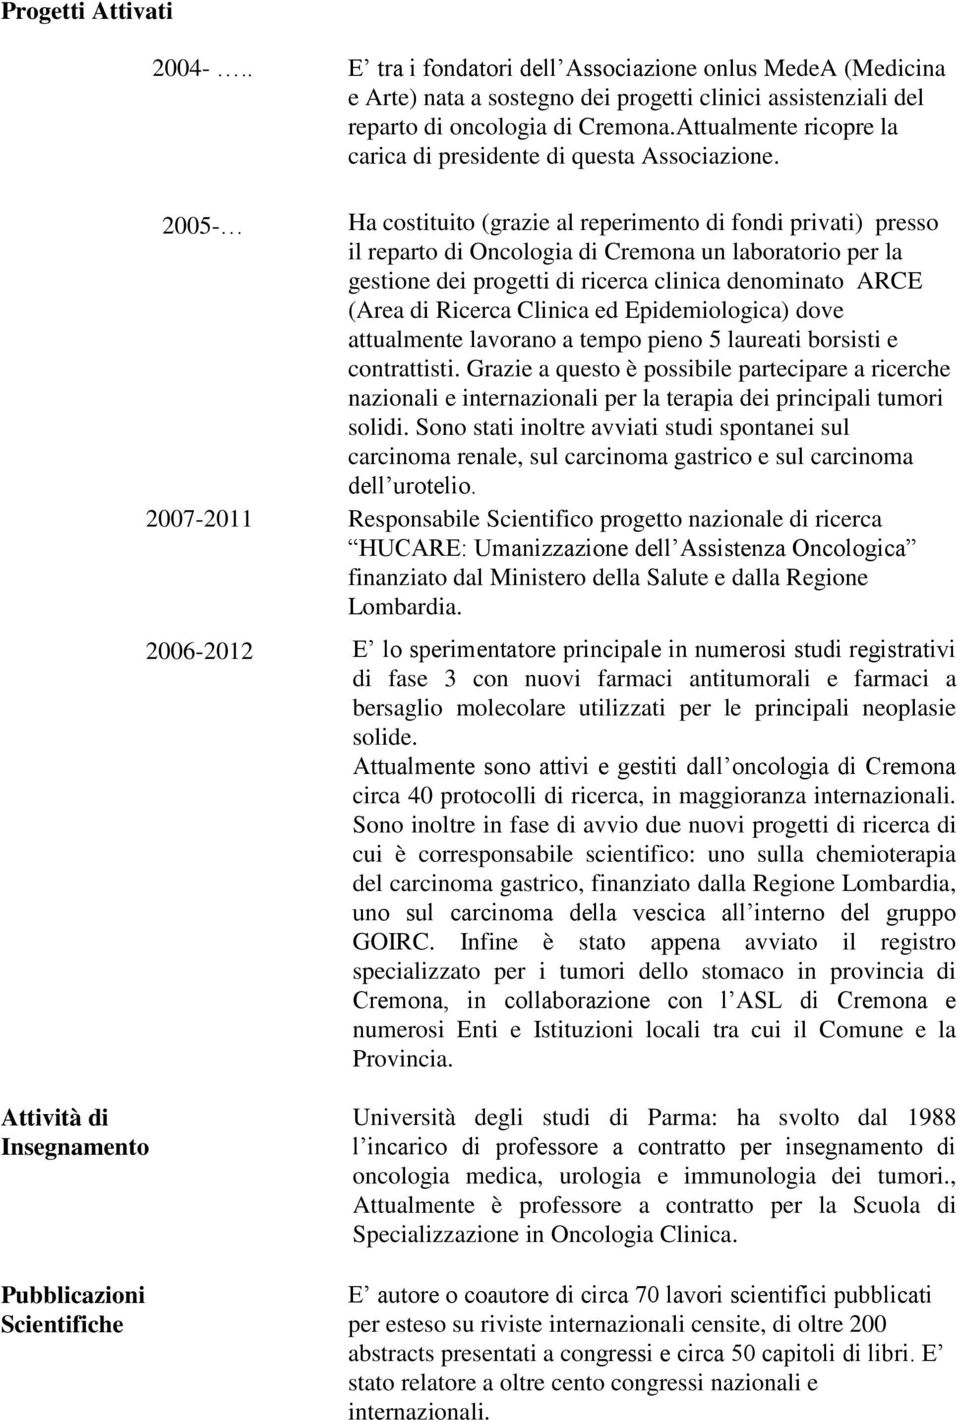 2005- Ha costituito (grazie al reperimento di fondi privati) presso il reparto di Oncologia di Cremona un laboratorio per la gestione dei progetti di ricerca clinica denominato ARCE (Area di Ricerca